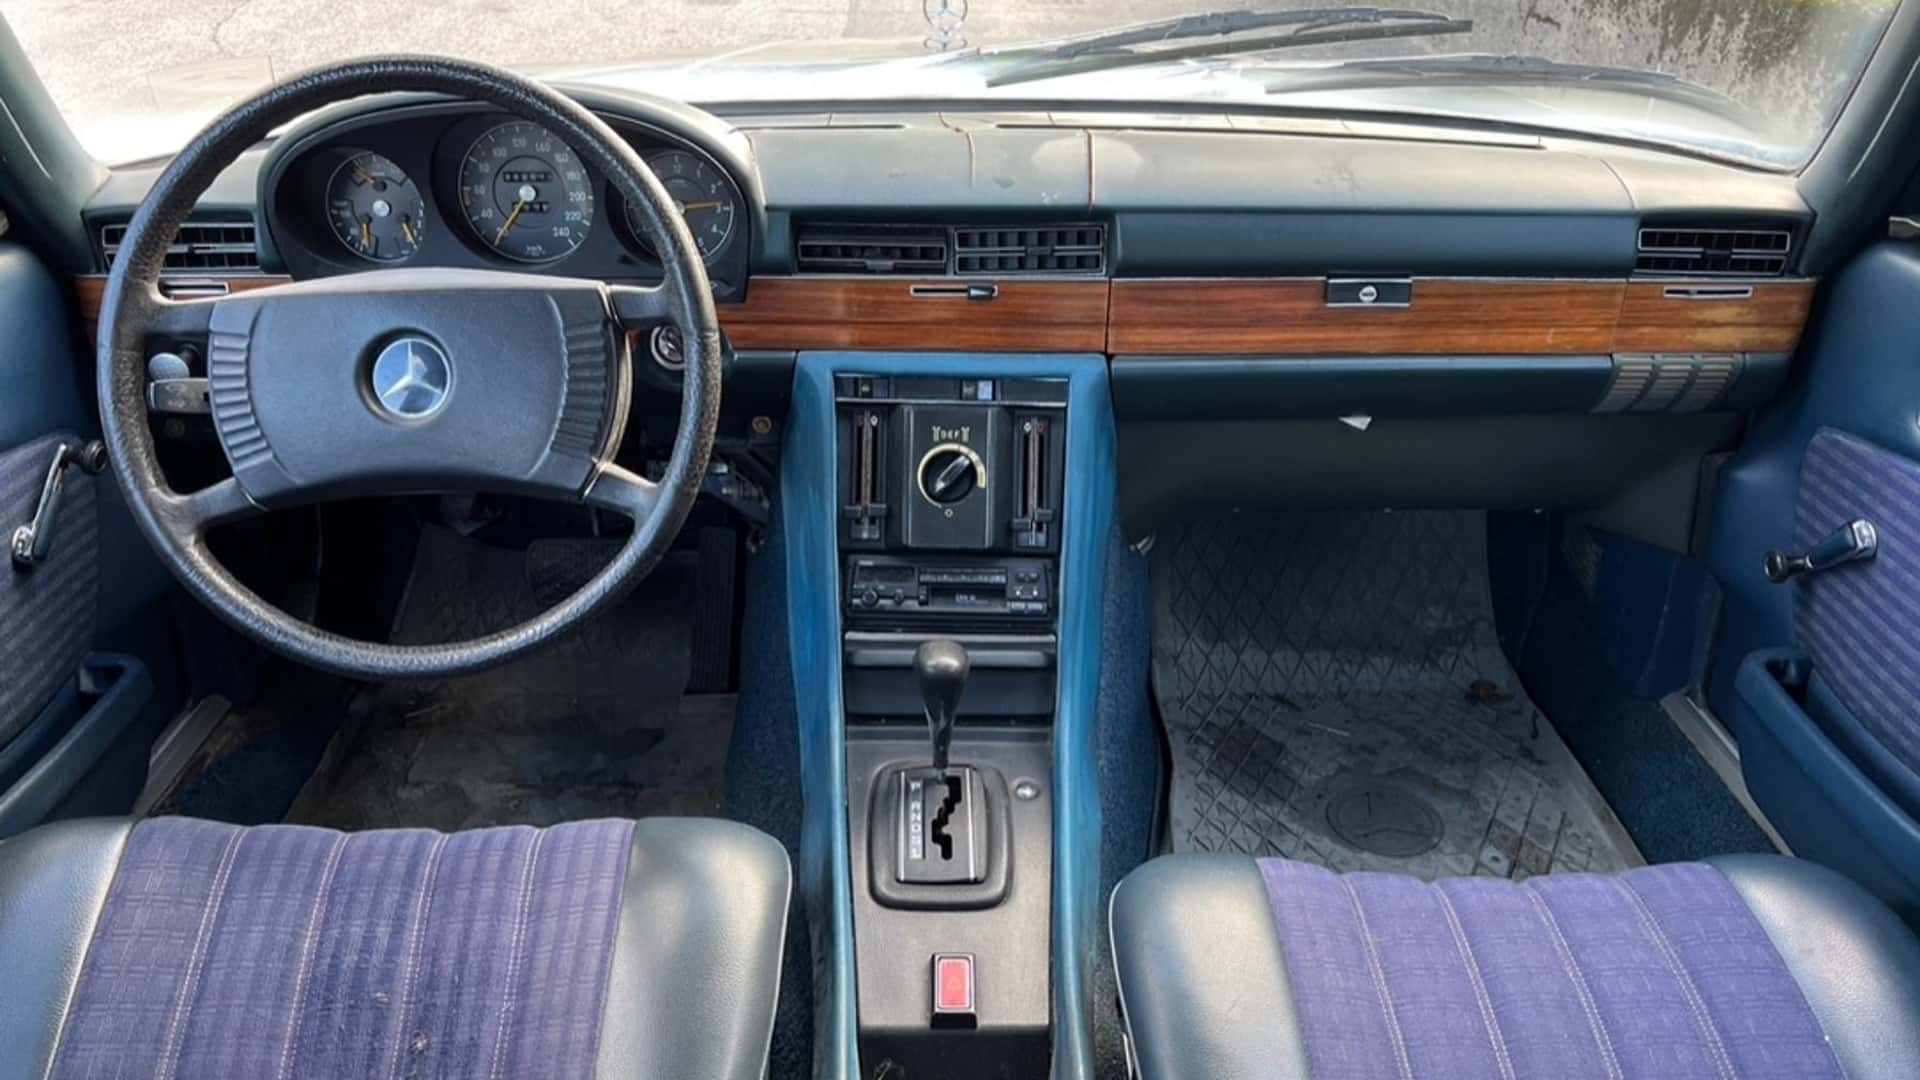 سيارة مرسيدس اس كلاس 1973 كانت مملوكة لملك السويد معروضة للبيع في مزاد 3